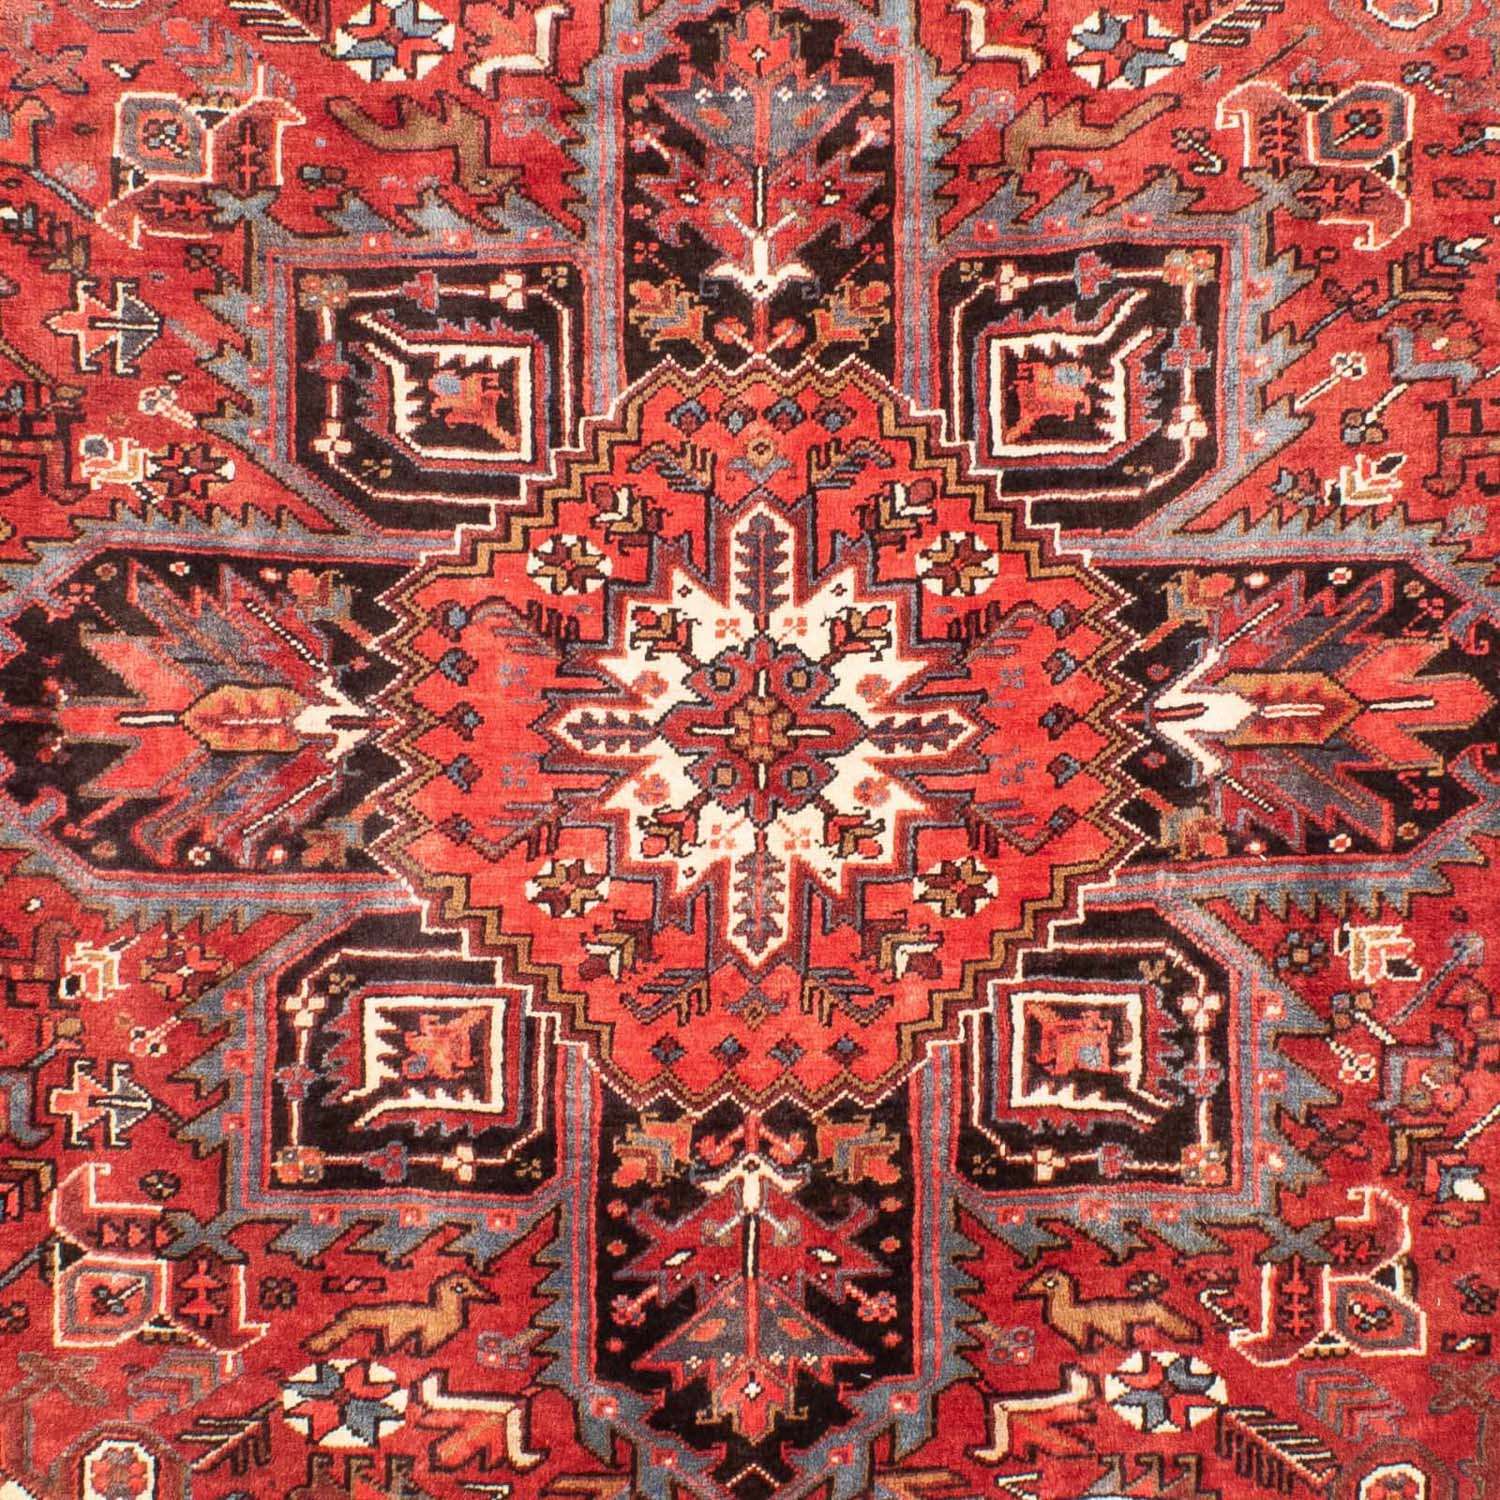 Tapis persan - Nomadic - 300 x 215 cm - rouge